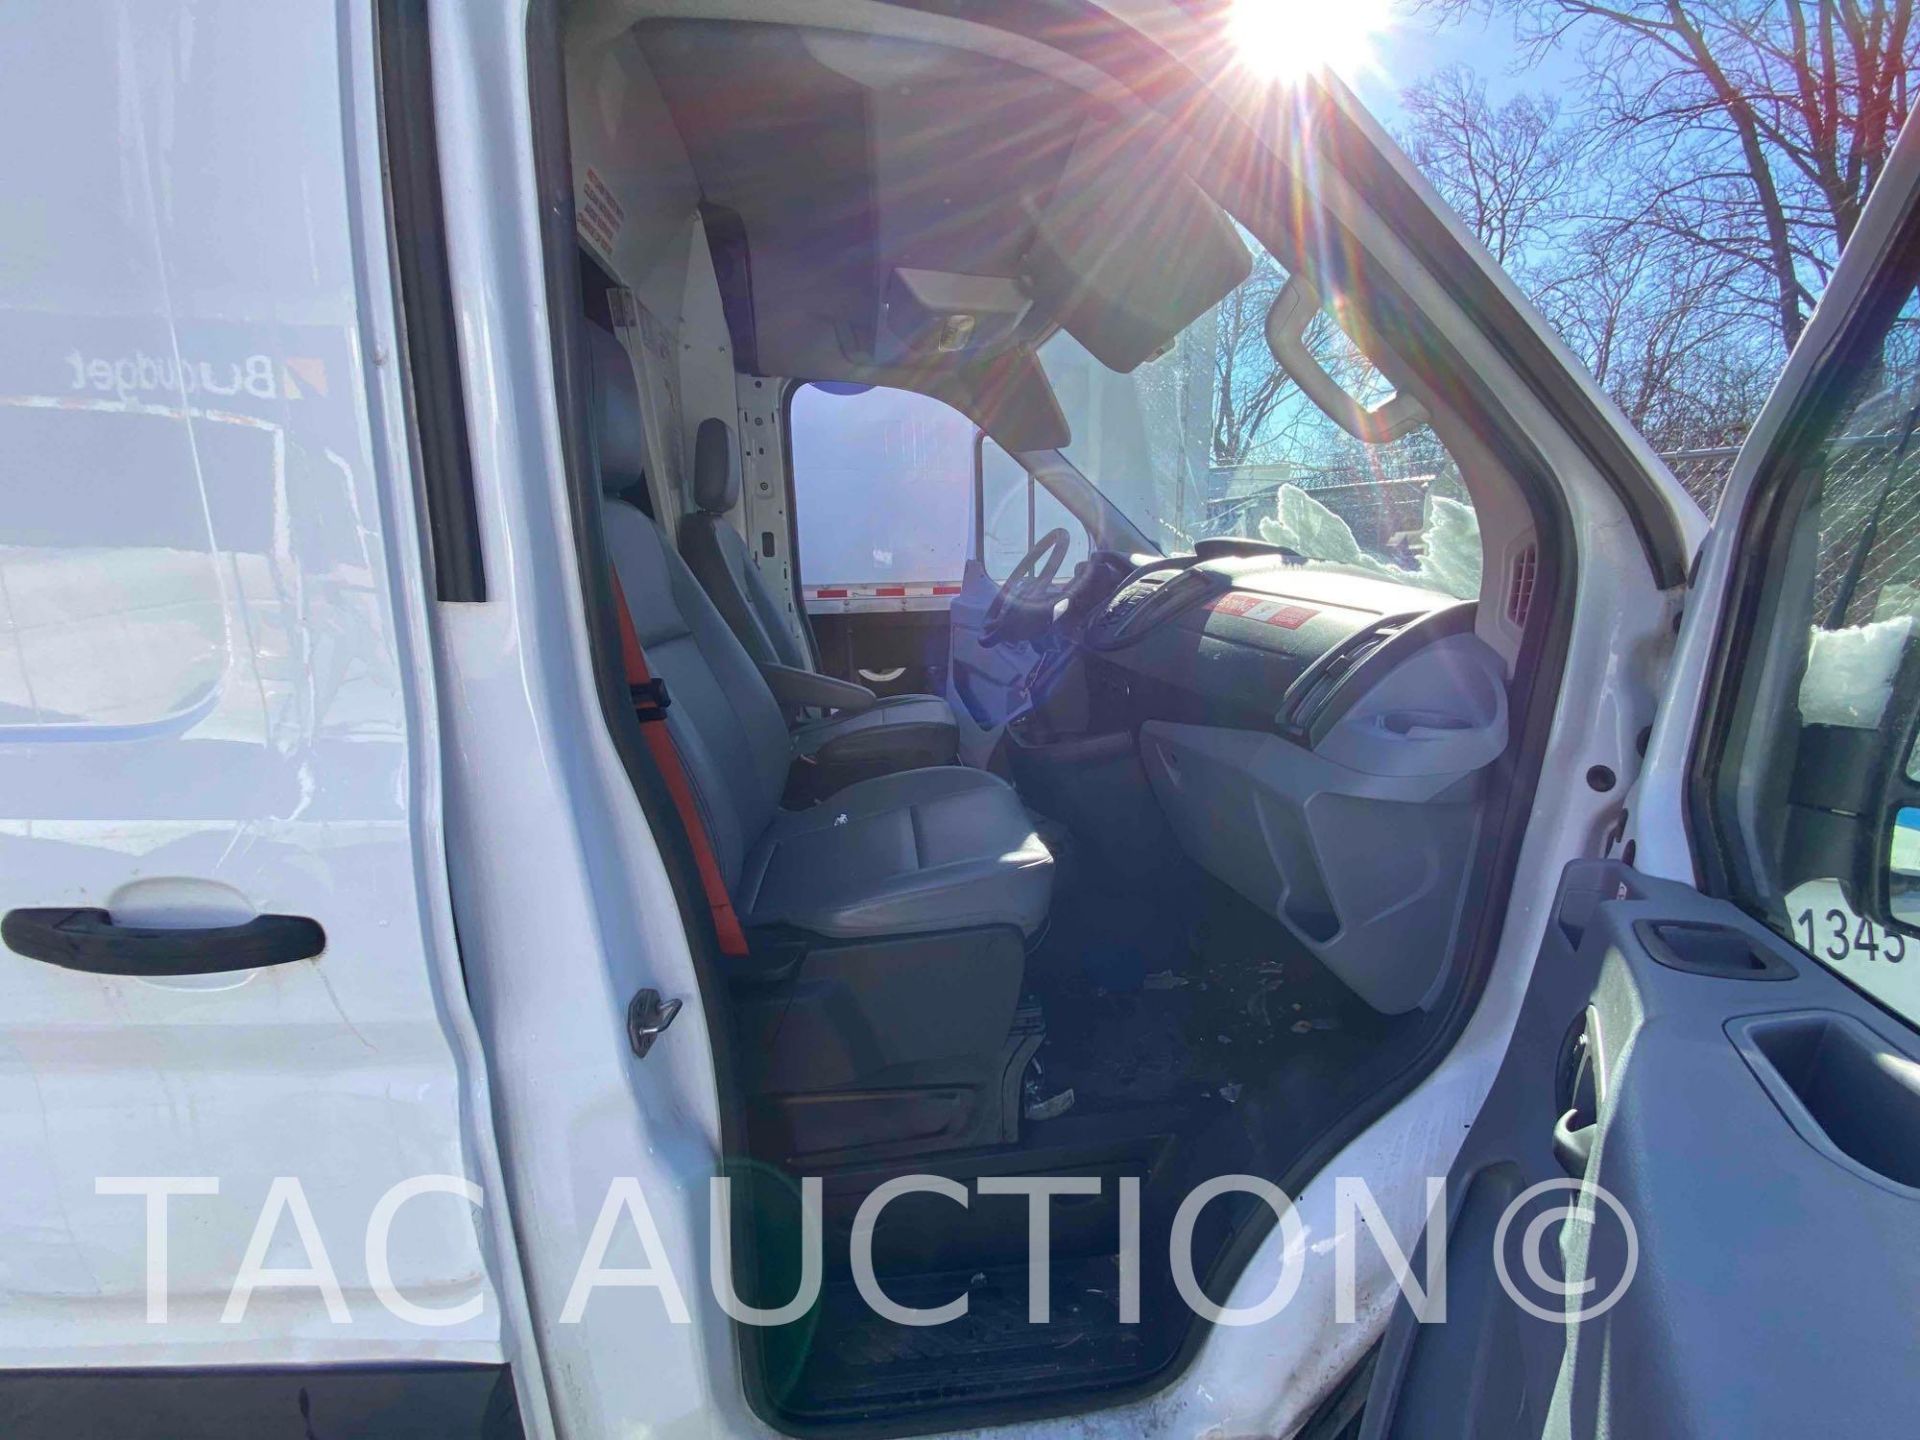 2019 Ford Transit 150 Cargo Van - Image 17 of 44